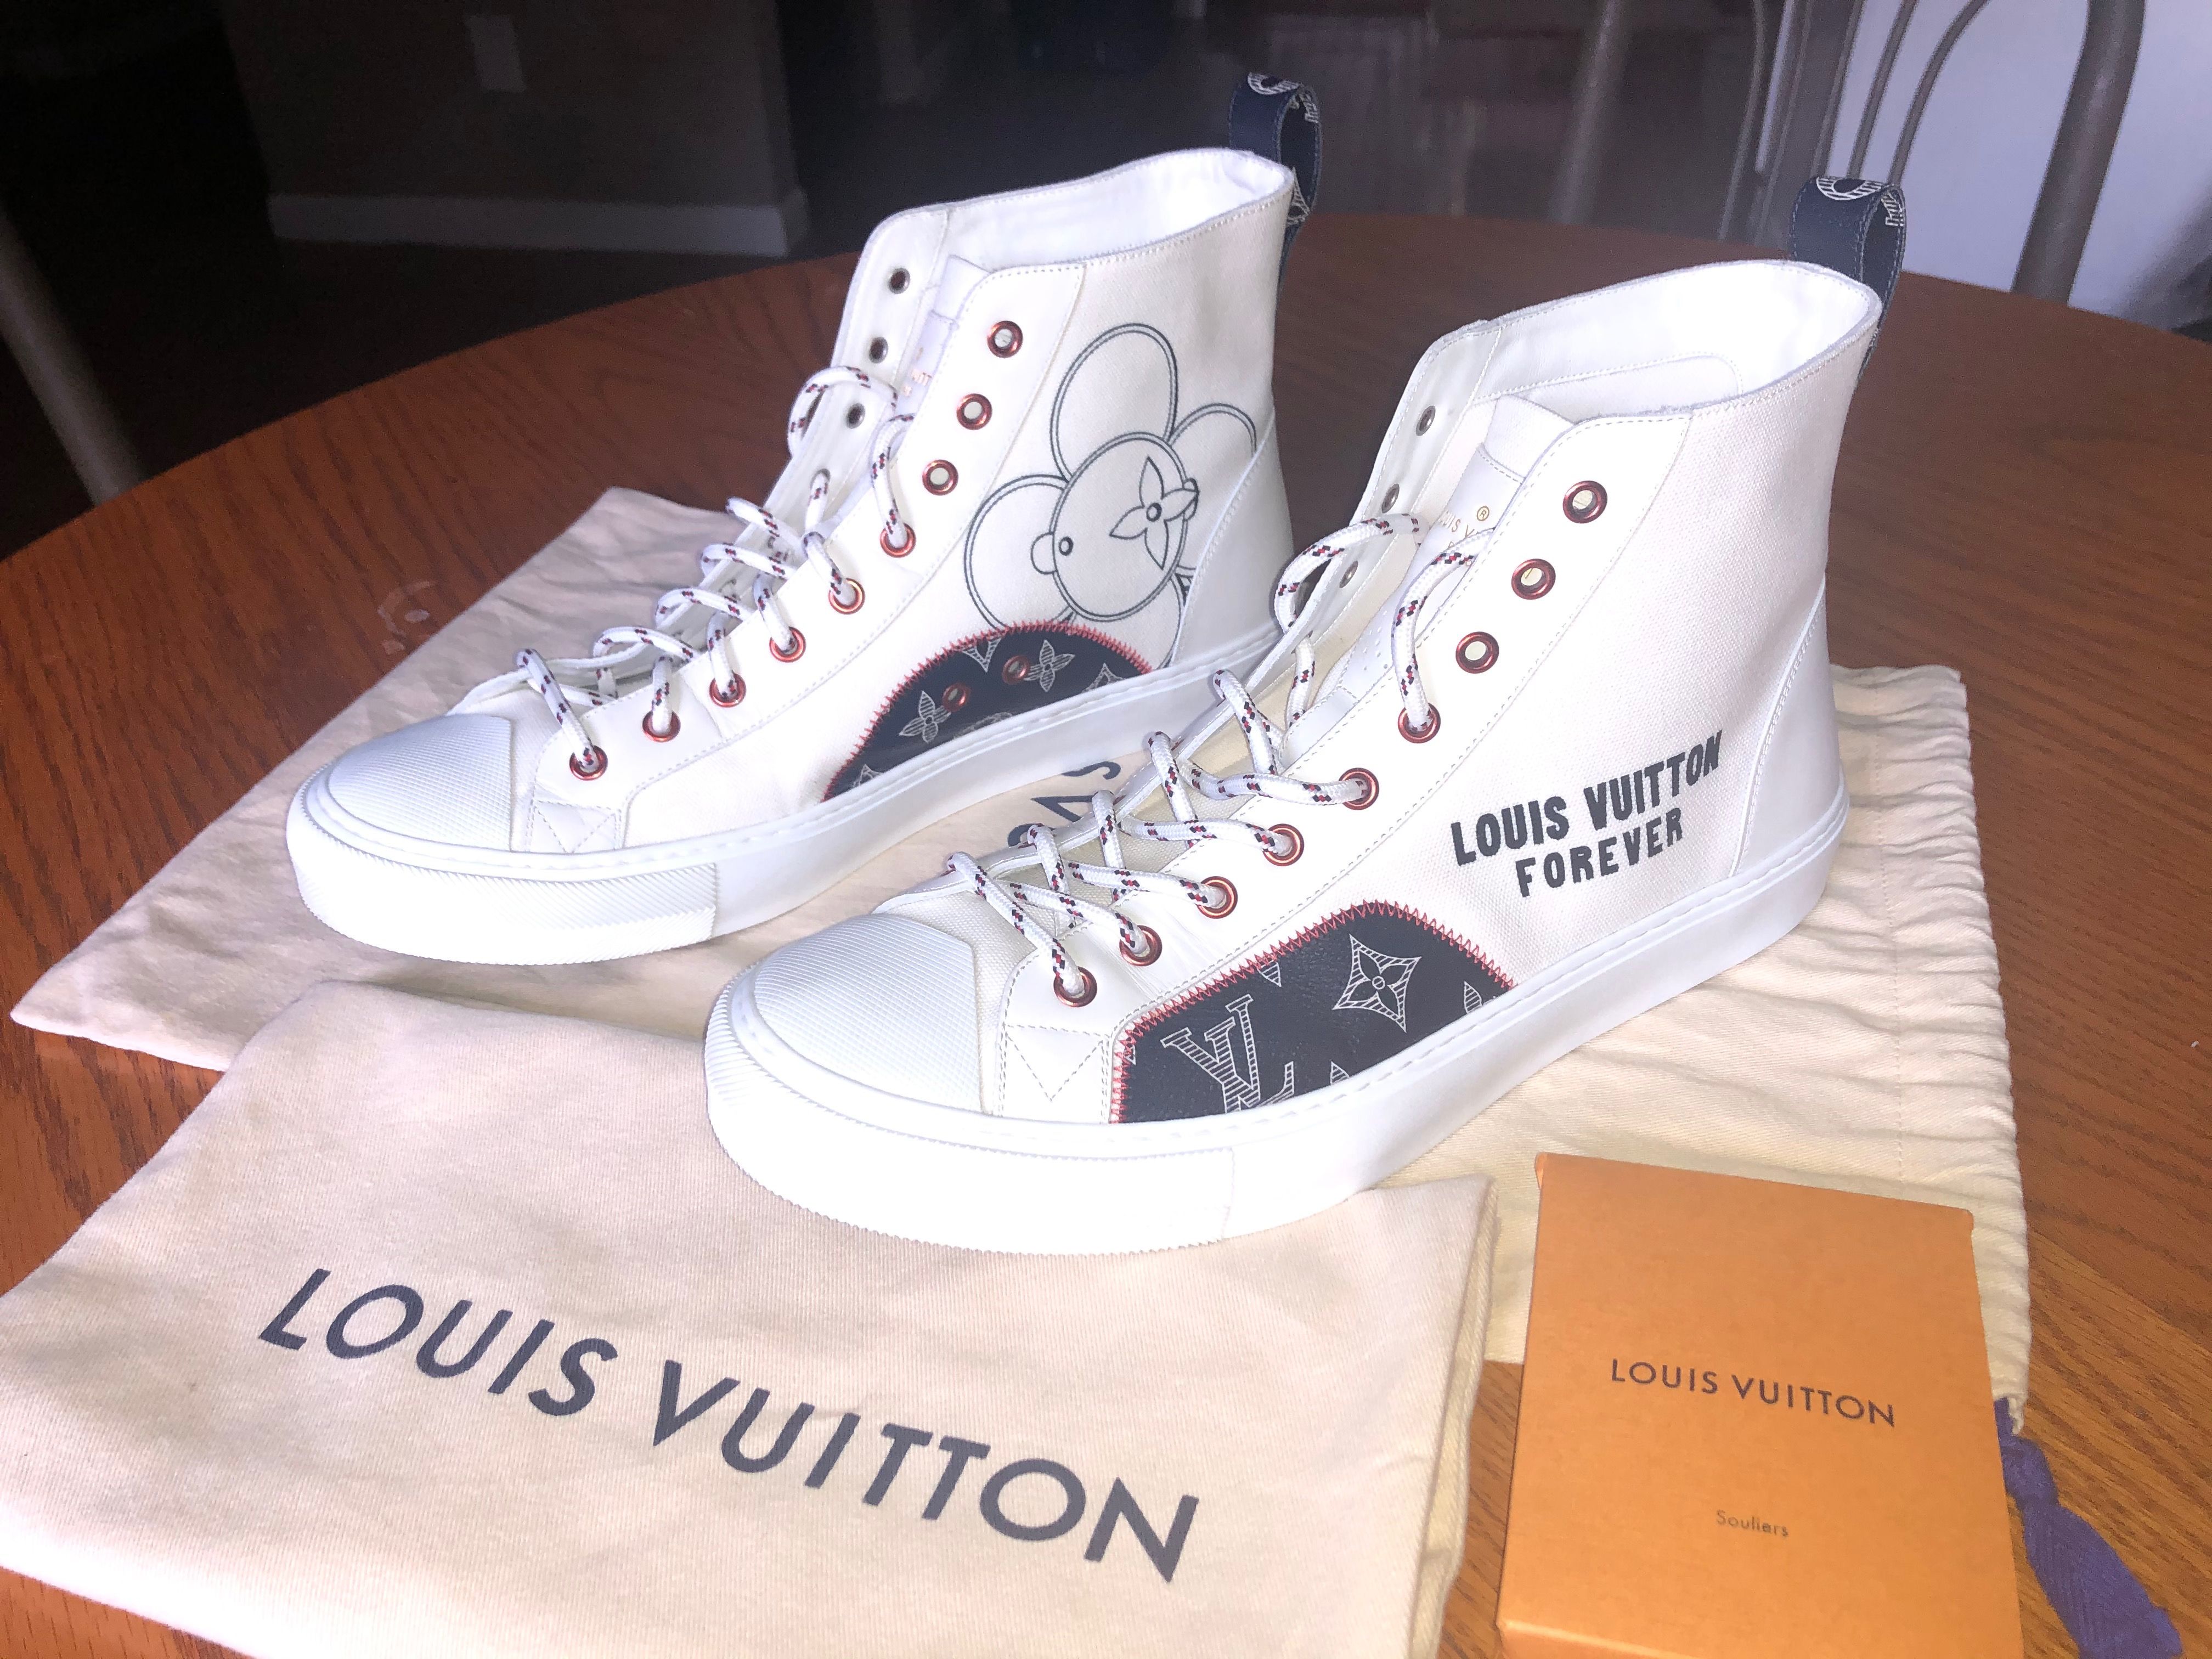 Louis Vuitton louis vuitton forever hi-top shoes